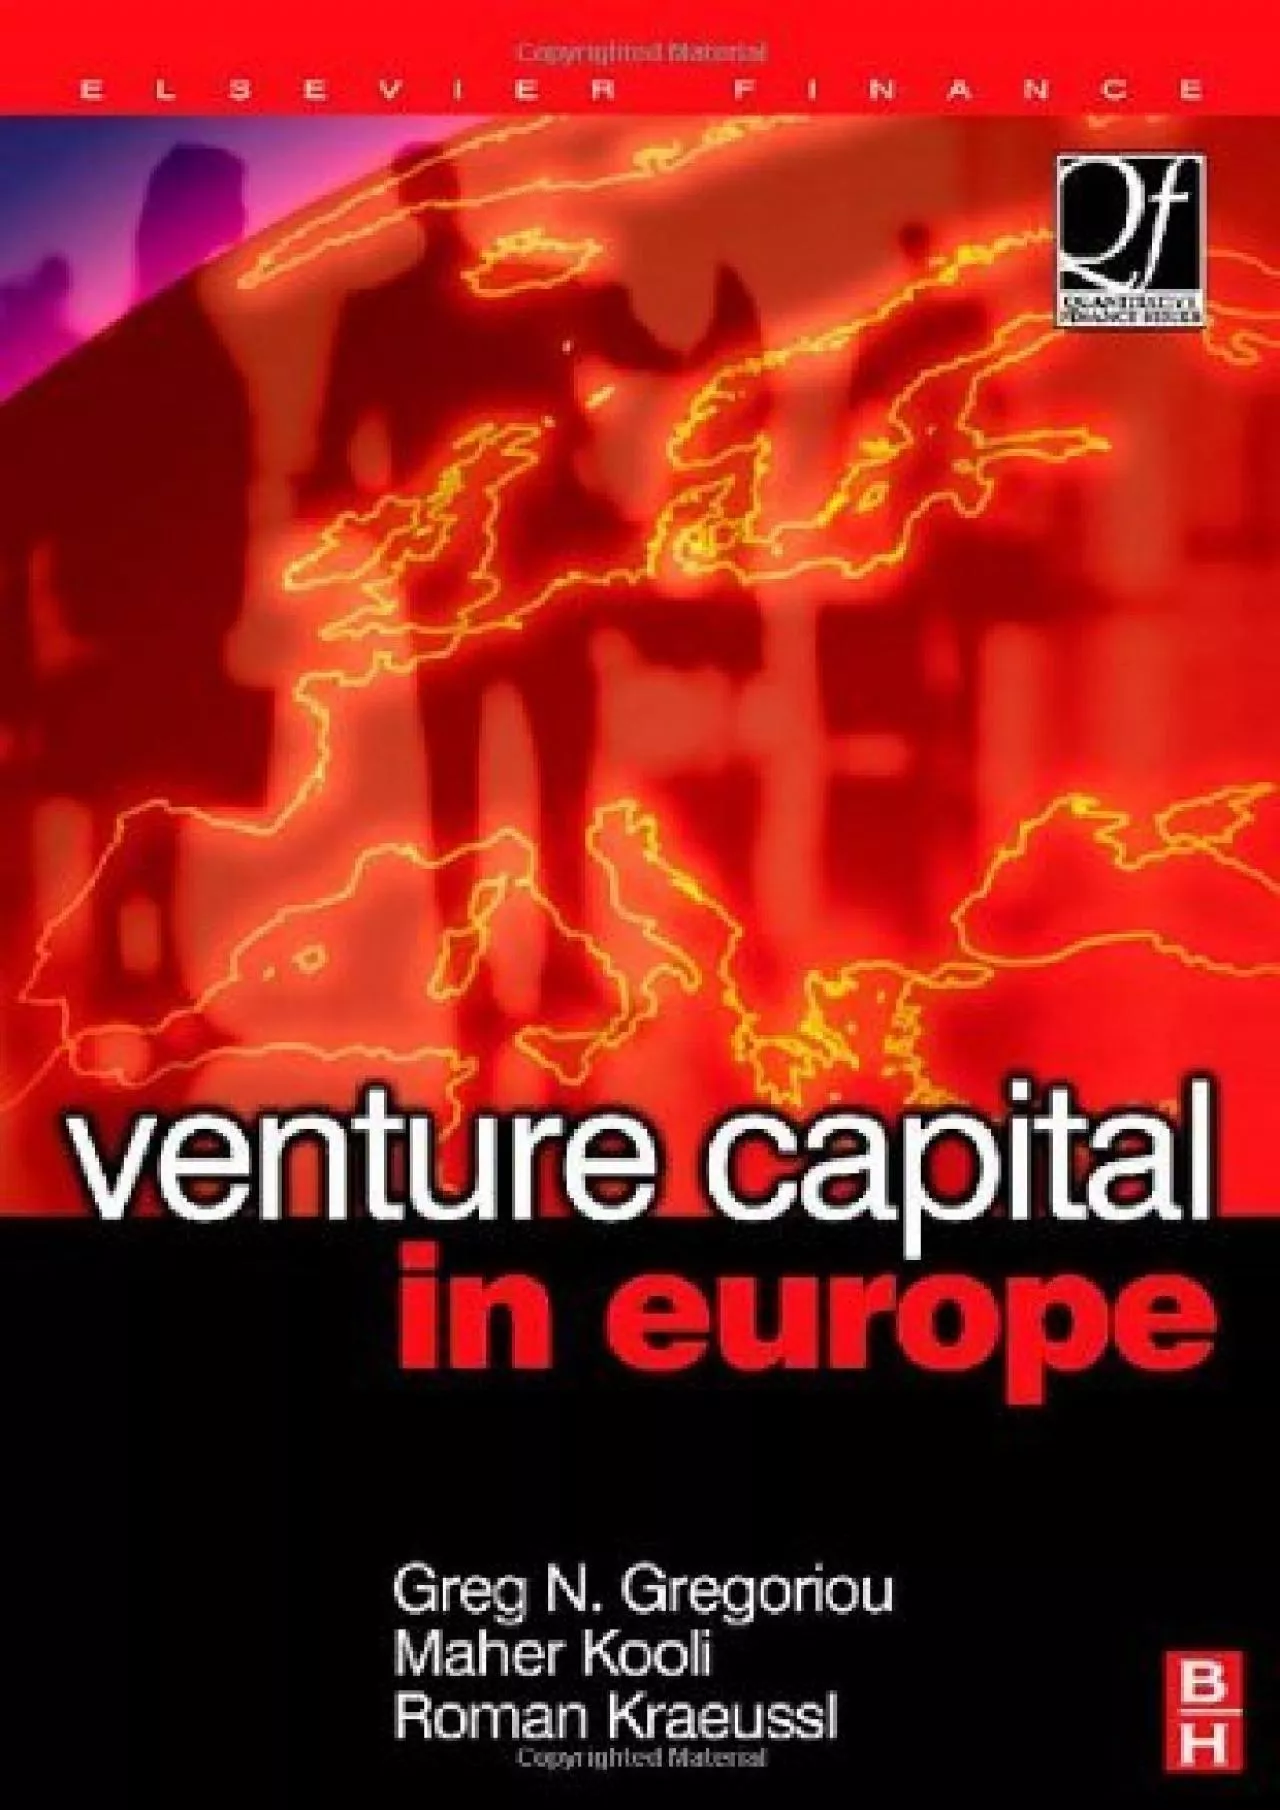 Venture Capital in Europe (Quantitative Finance)